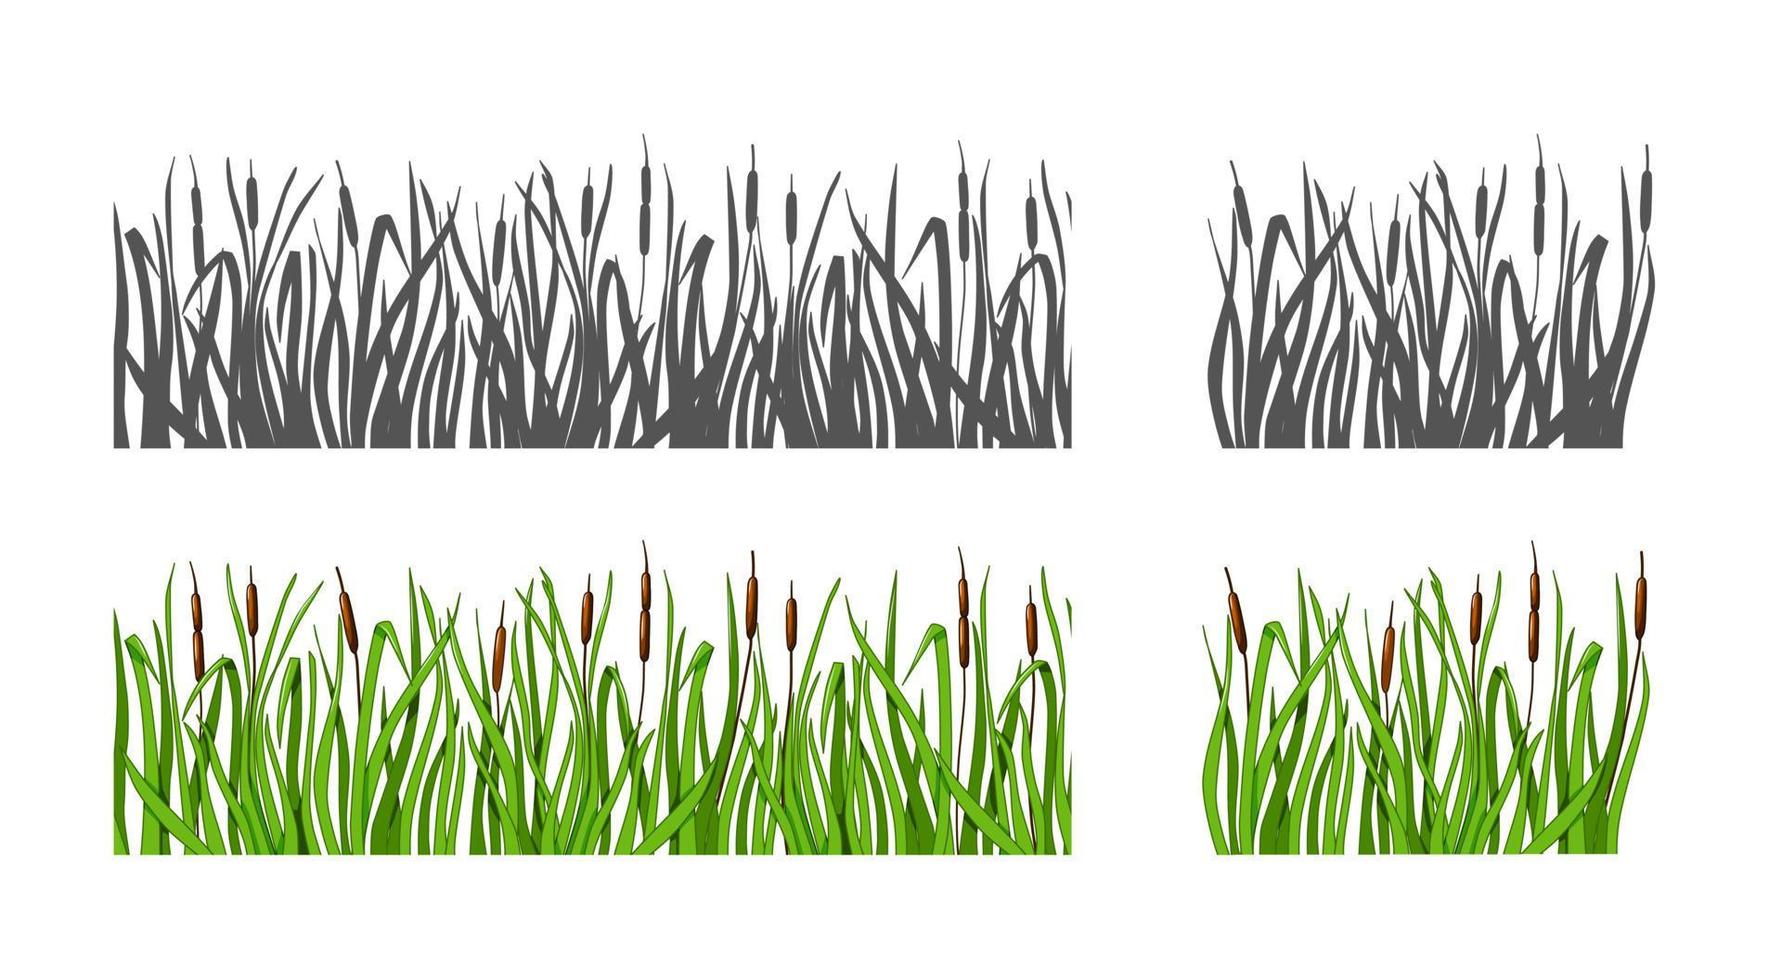 gräs med vass som siluett och färgalternativ. isolerad bakgrund. vektor illustration.